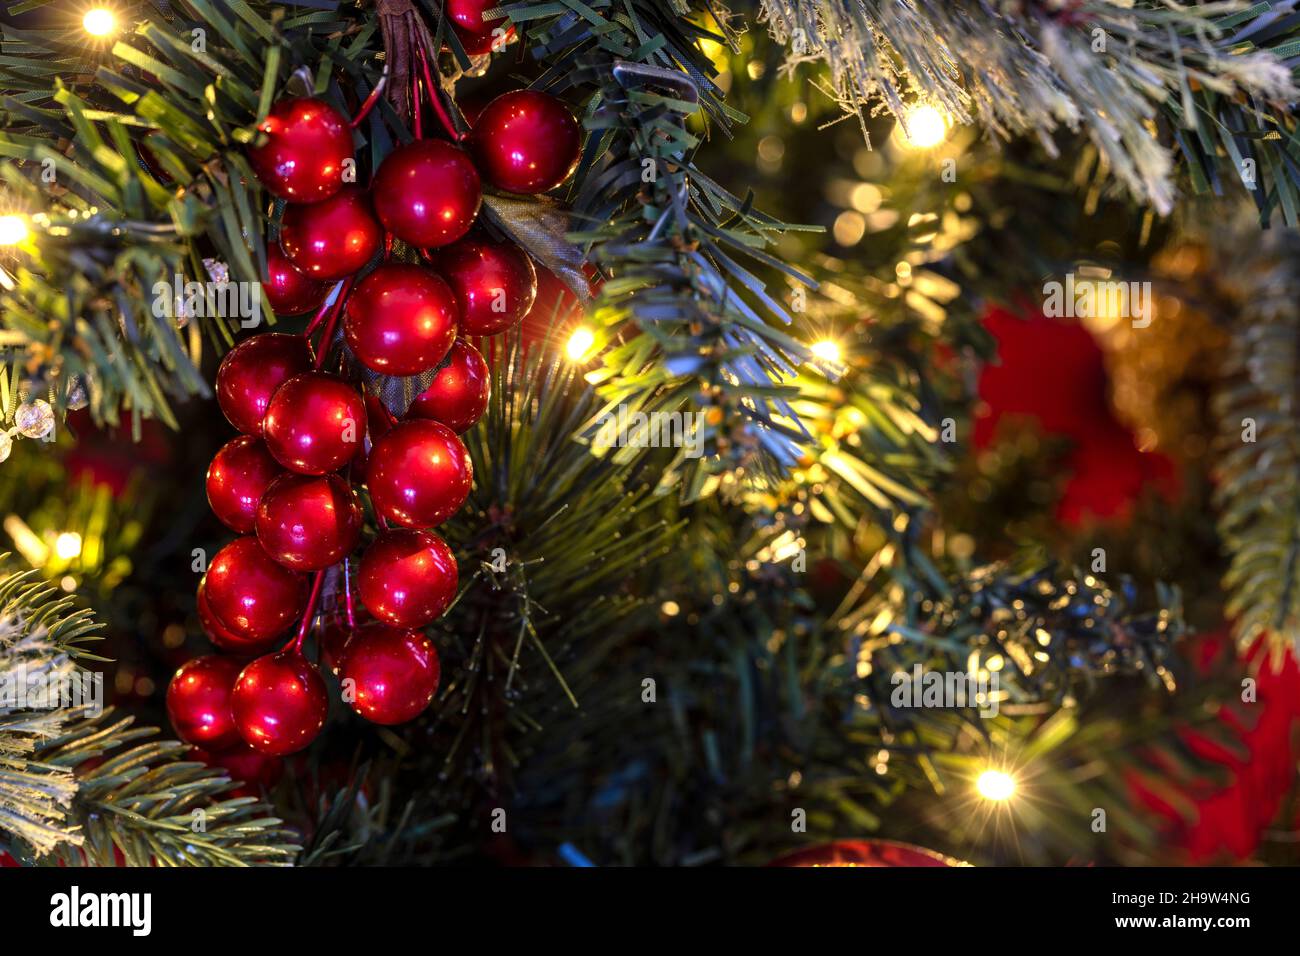 Décoration d'arbres de Noël aux baies sur un arbre illuminé pour les fêtes de fin d'année Banque D'Images